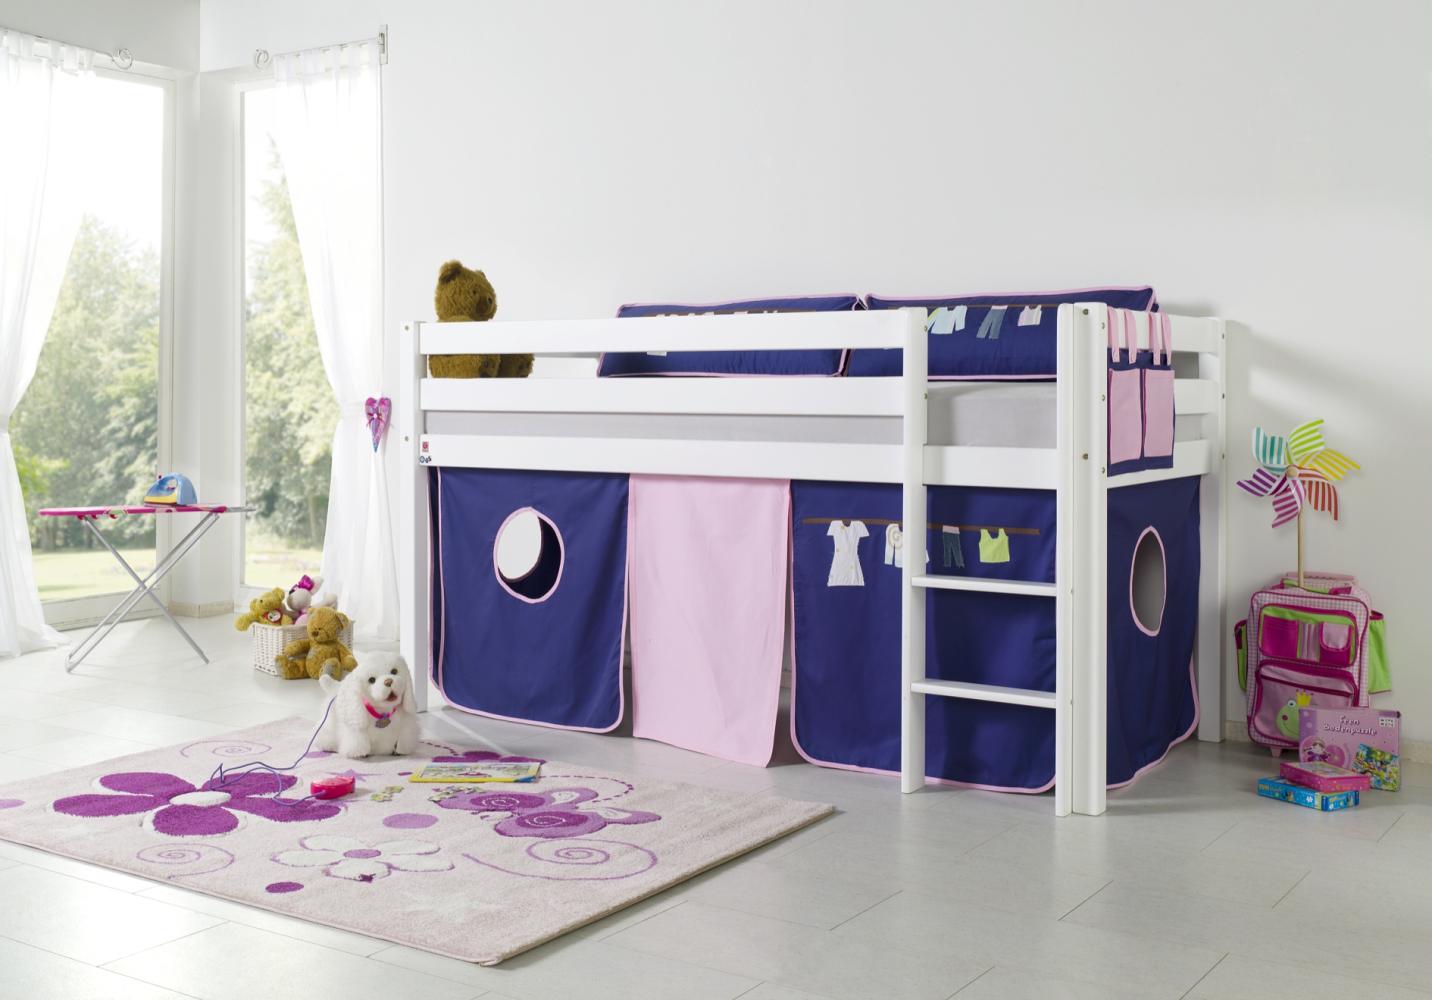 Relita Halbhohes Spielbett ALEX Buche massiv weiß lackiert mit Stoffset Kleider Bild 1